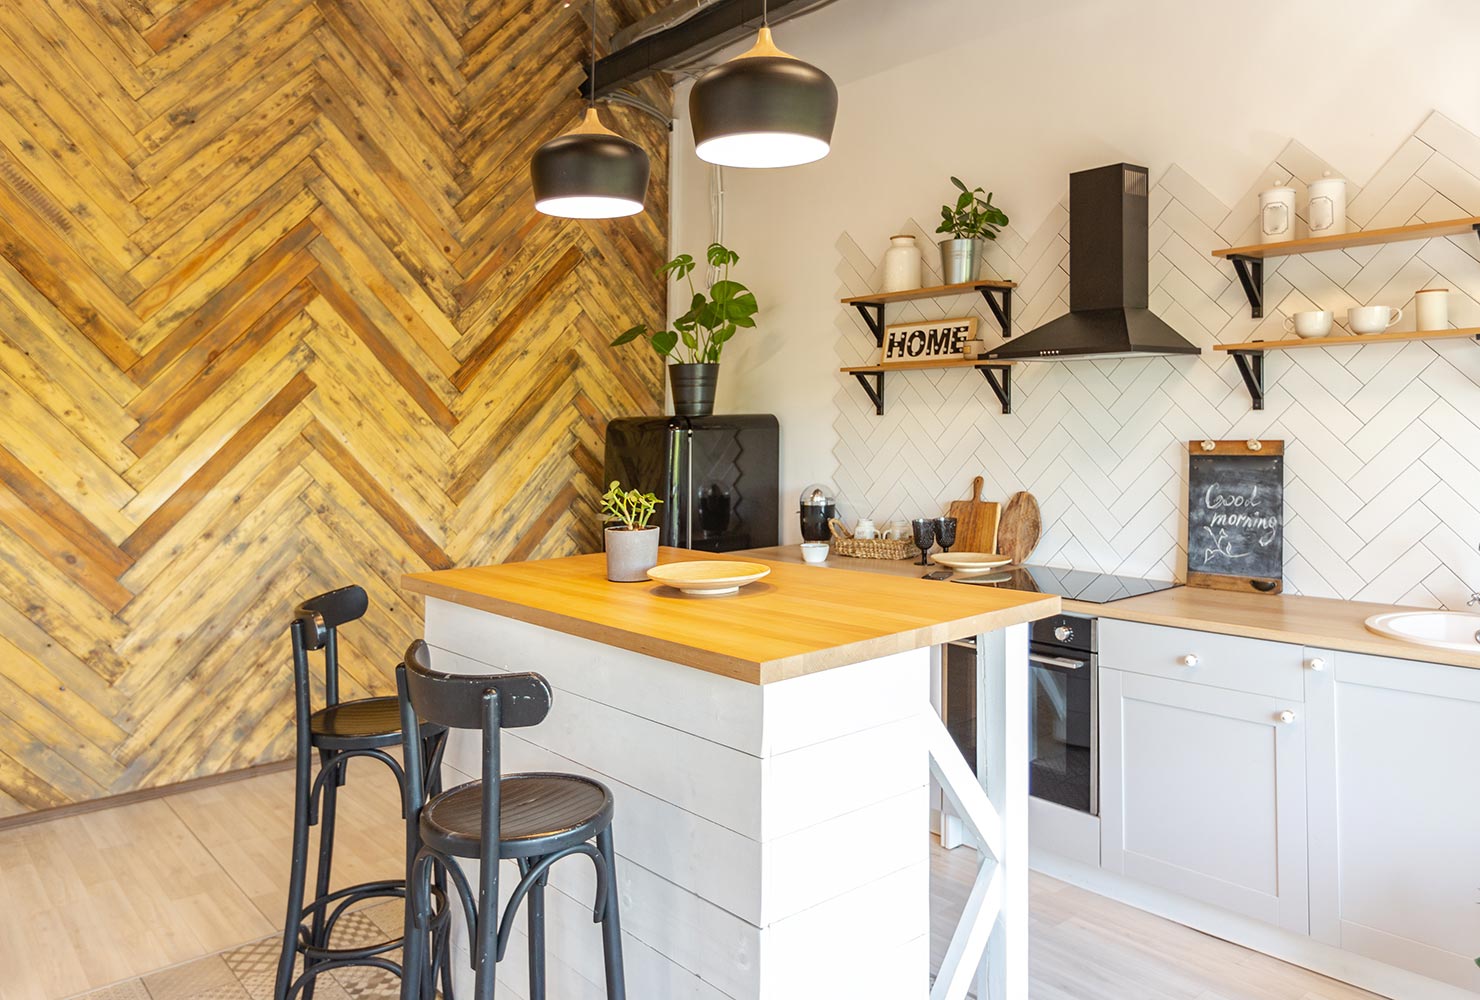 Wood as kitchen wall decor? An original idea!